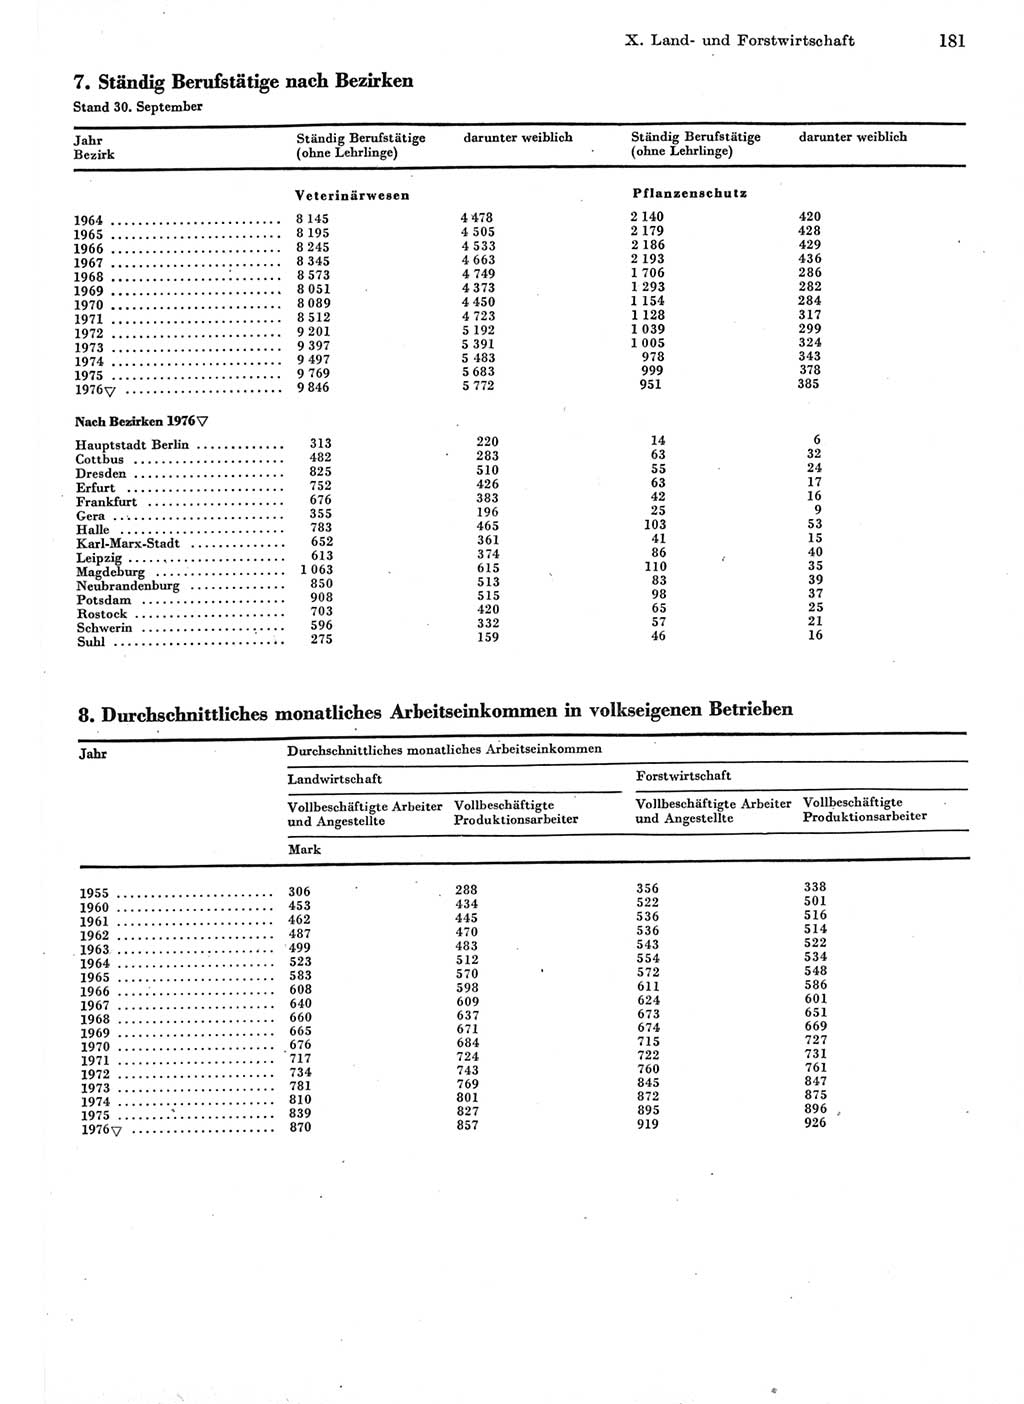 Statistisches Jahrbuch der Deutschen Demokratischen Republik (DDR) 1977, Seite 181 (Stat. Jb. DDR 1977, S. 181)